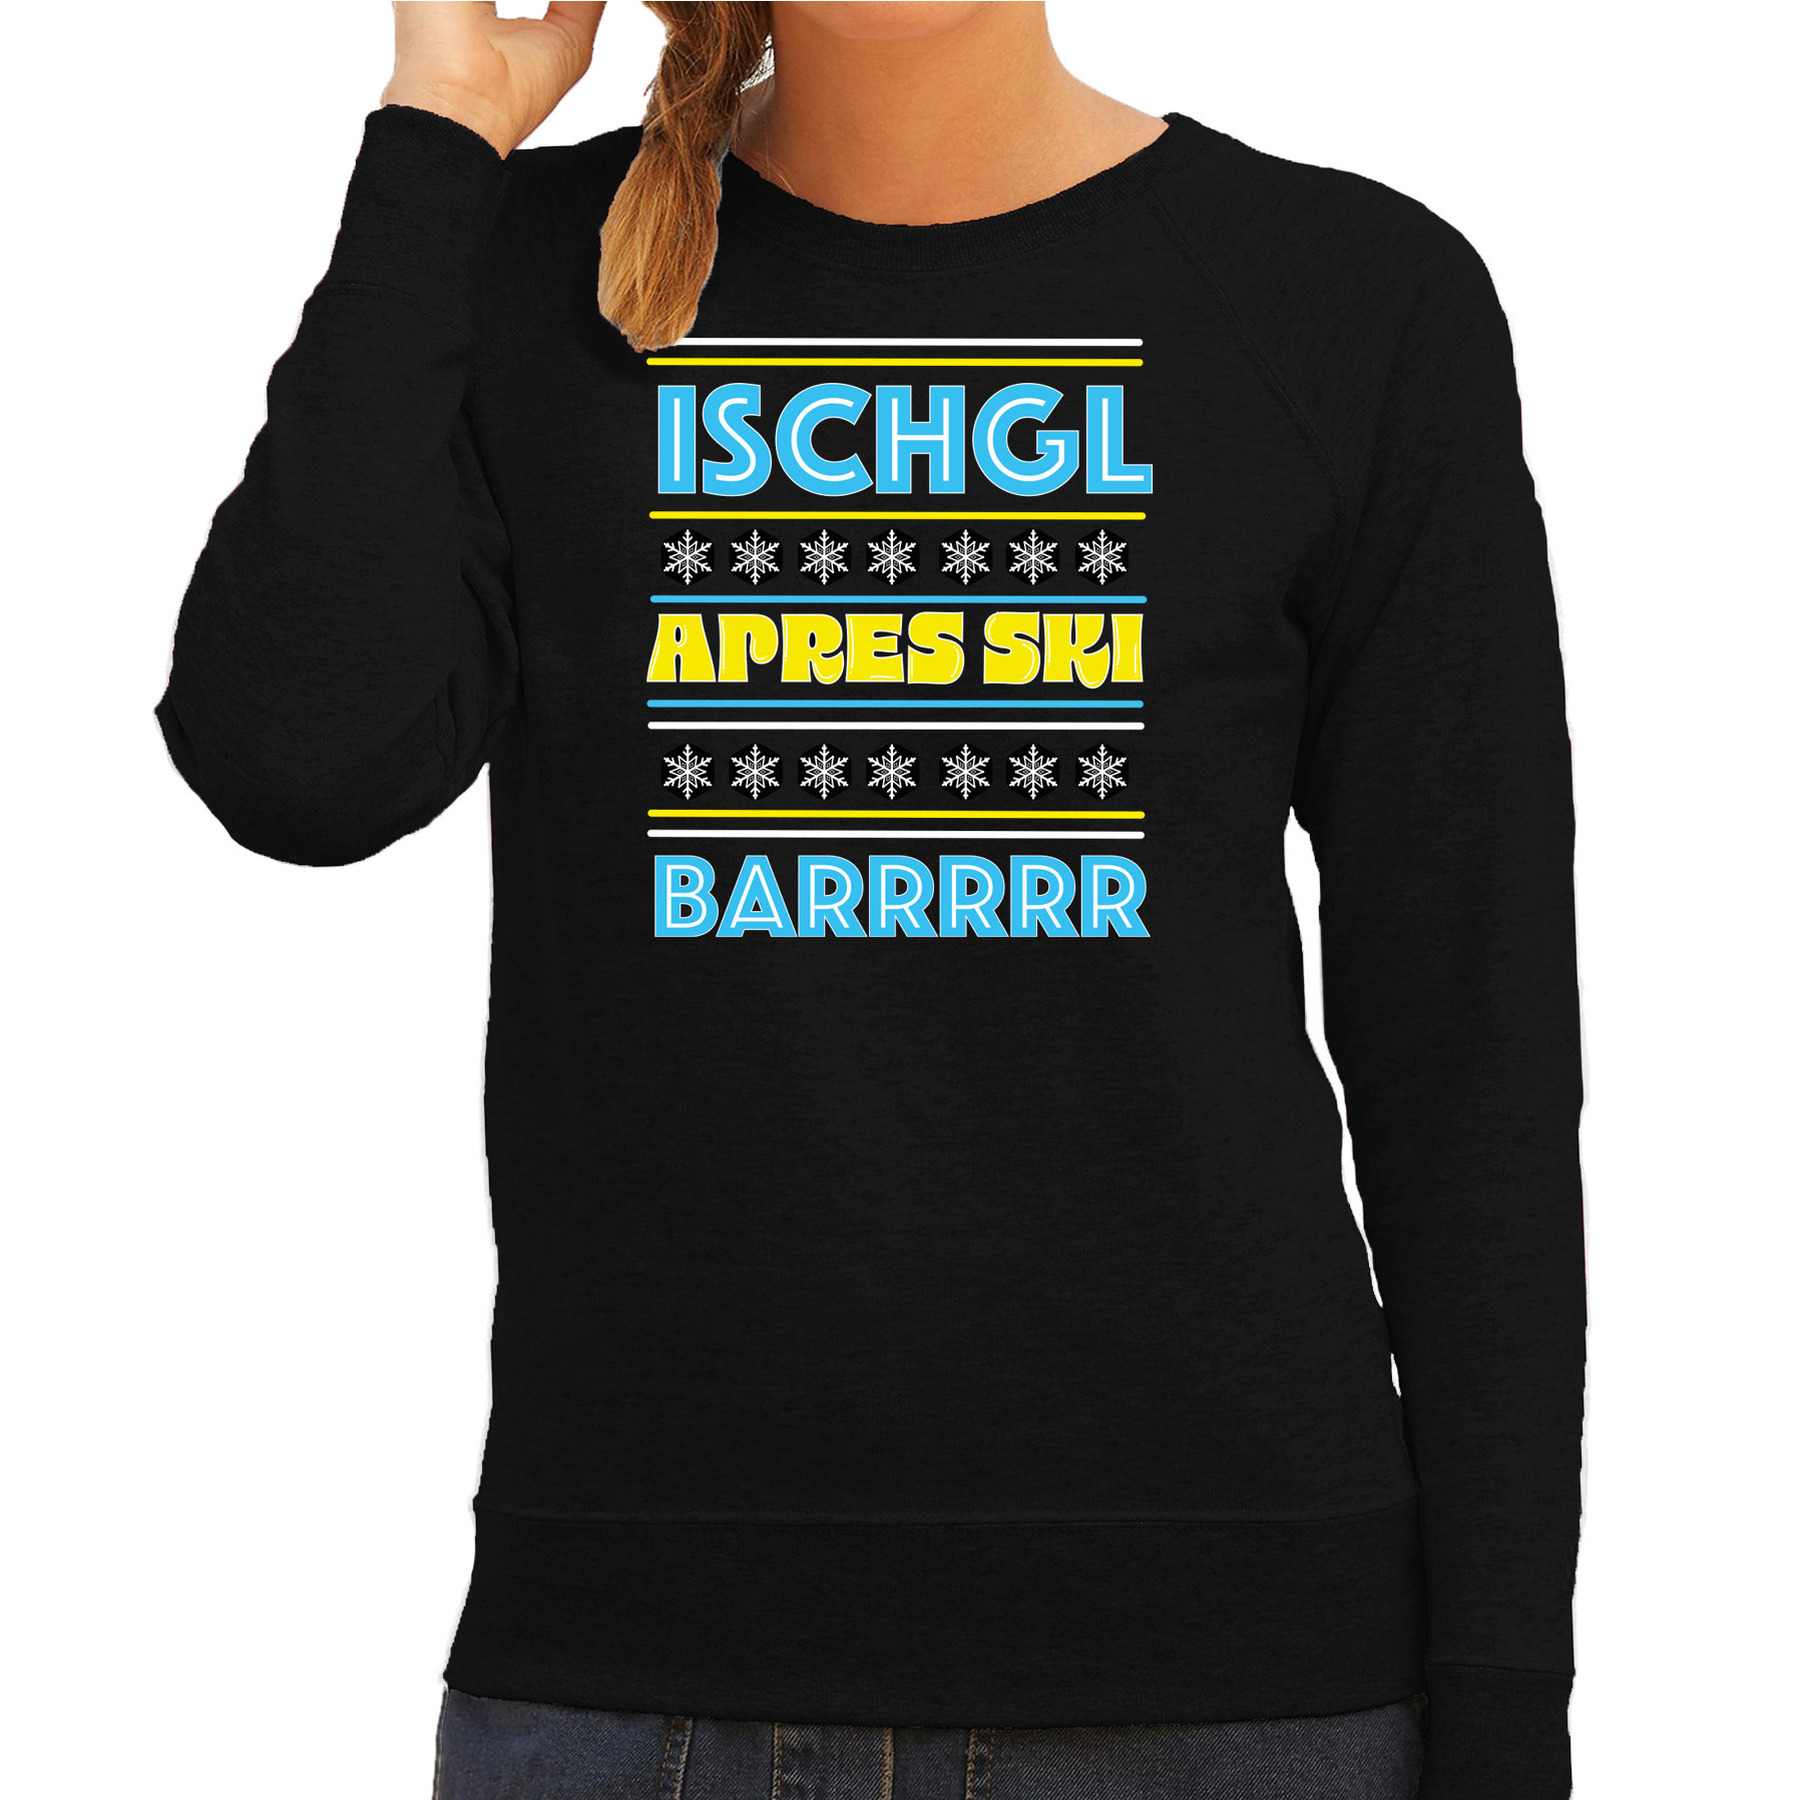 Apres ski sweater voor dames Ischgl zwart apresski bar-kroeg skien-snowboarden wintersport